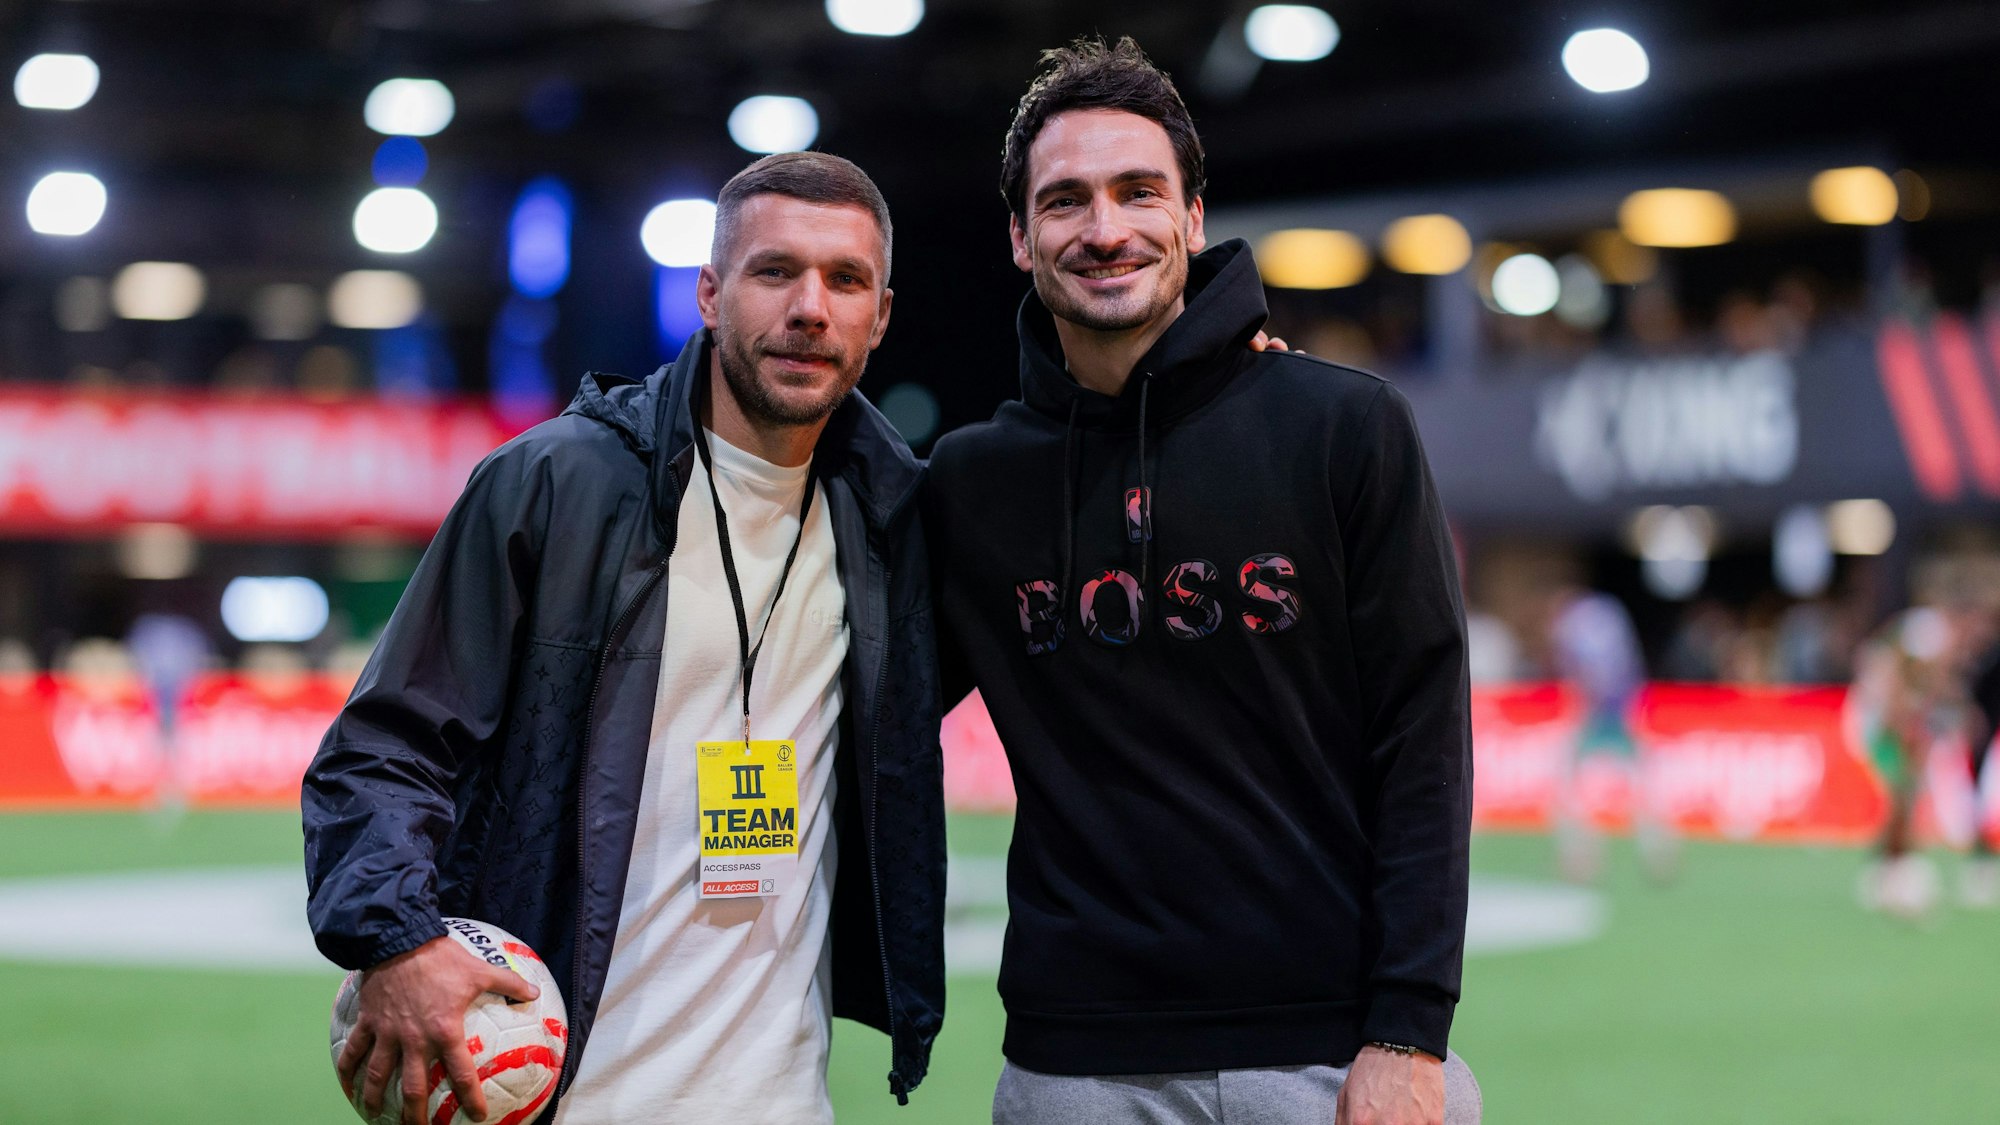 Lukas Podolski (l.) und Mats Hummels, die Präsidenten der Baller League, waren am Montag zu Besuch in der MotorWorld in Köln.